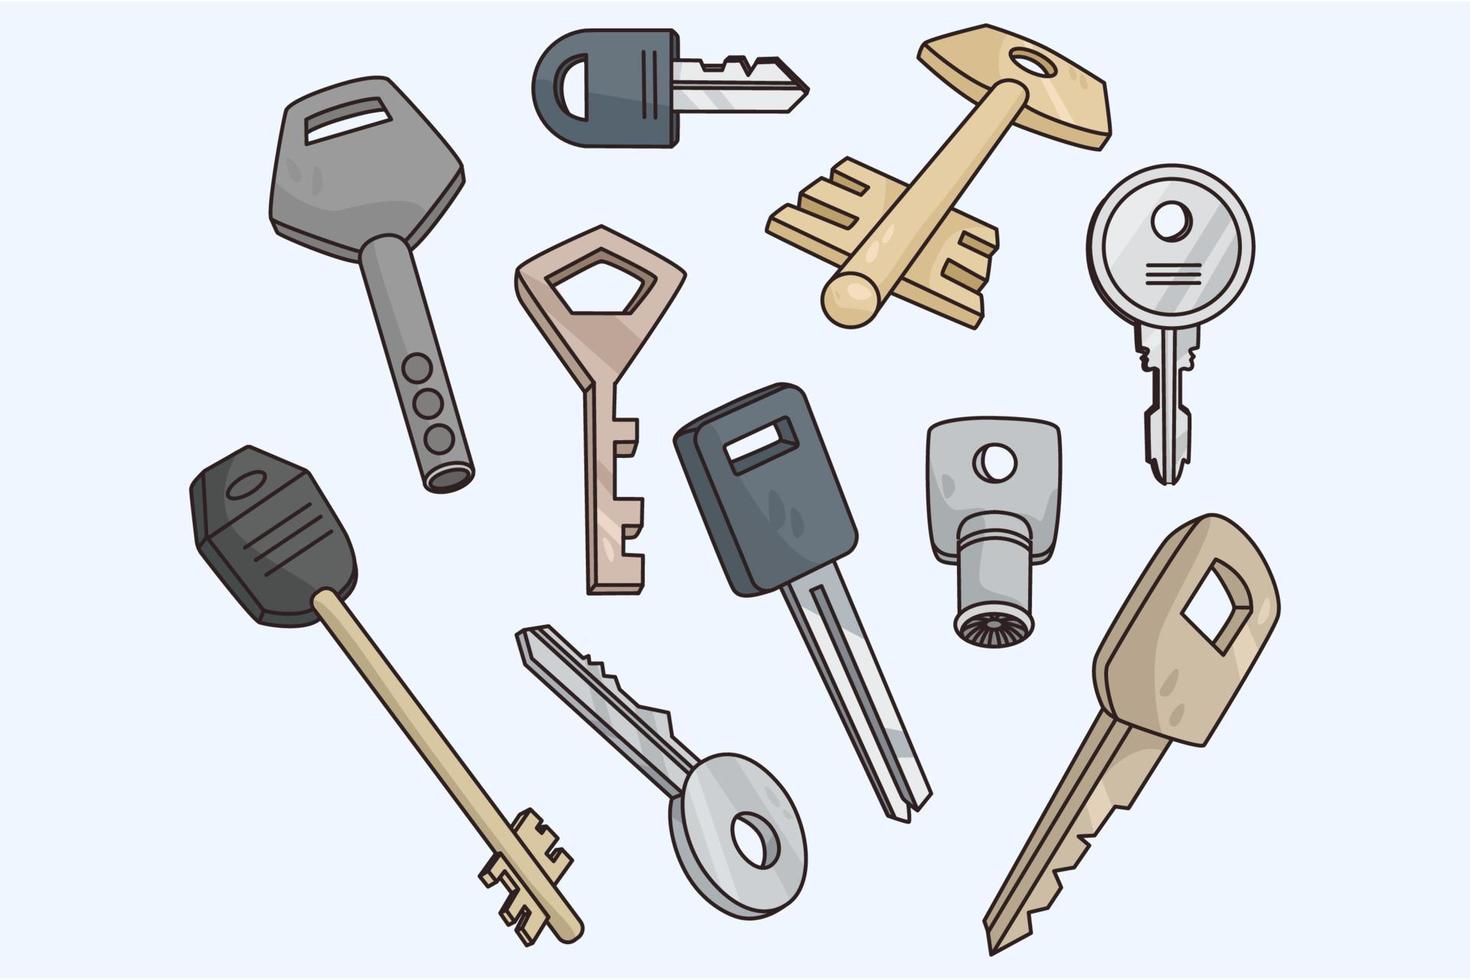 reeks van modern en klassiek oud sleutels van verschillend maten en vormen. verzameling van divers sleutel bundel voor huis of auto deur. vlak vector illustratie.